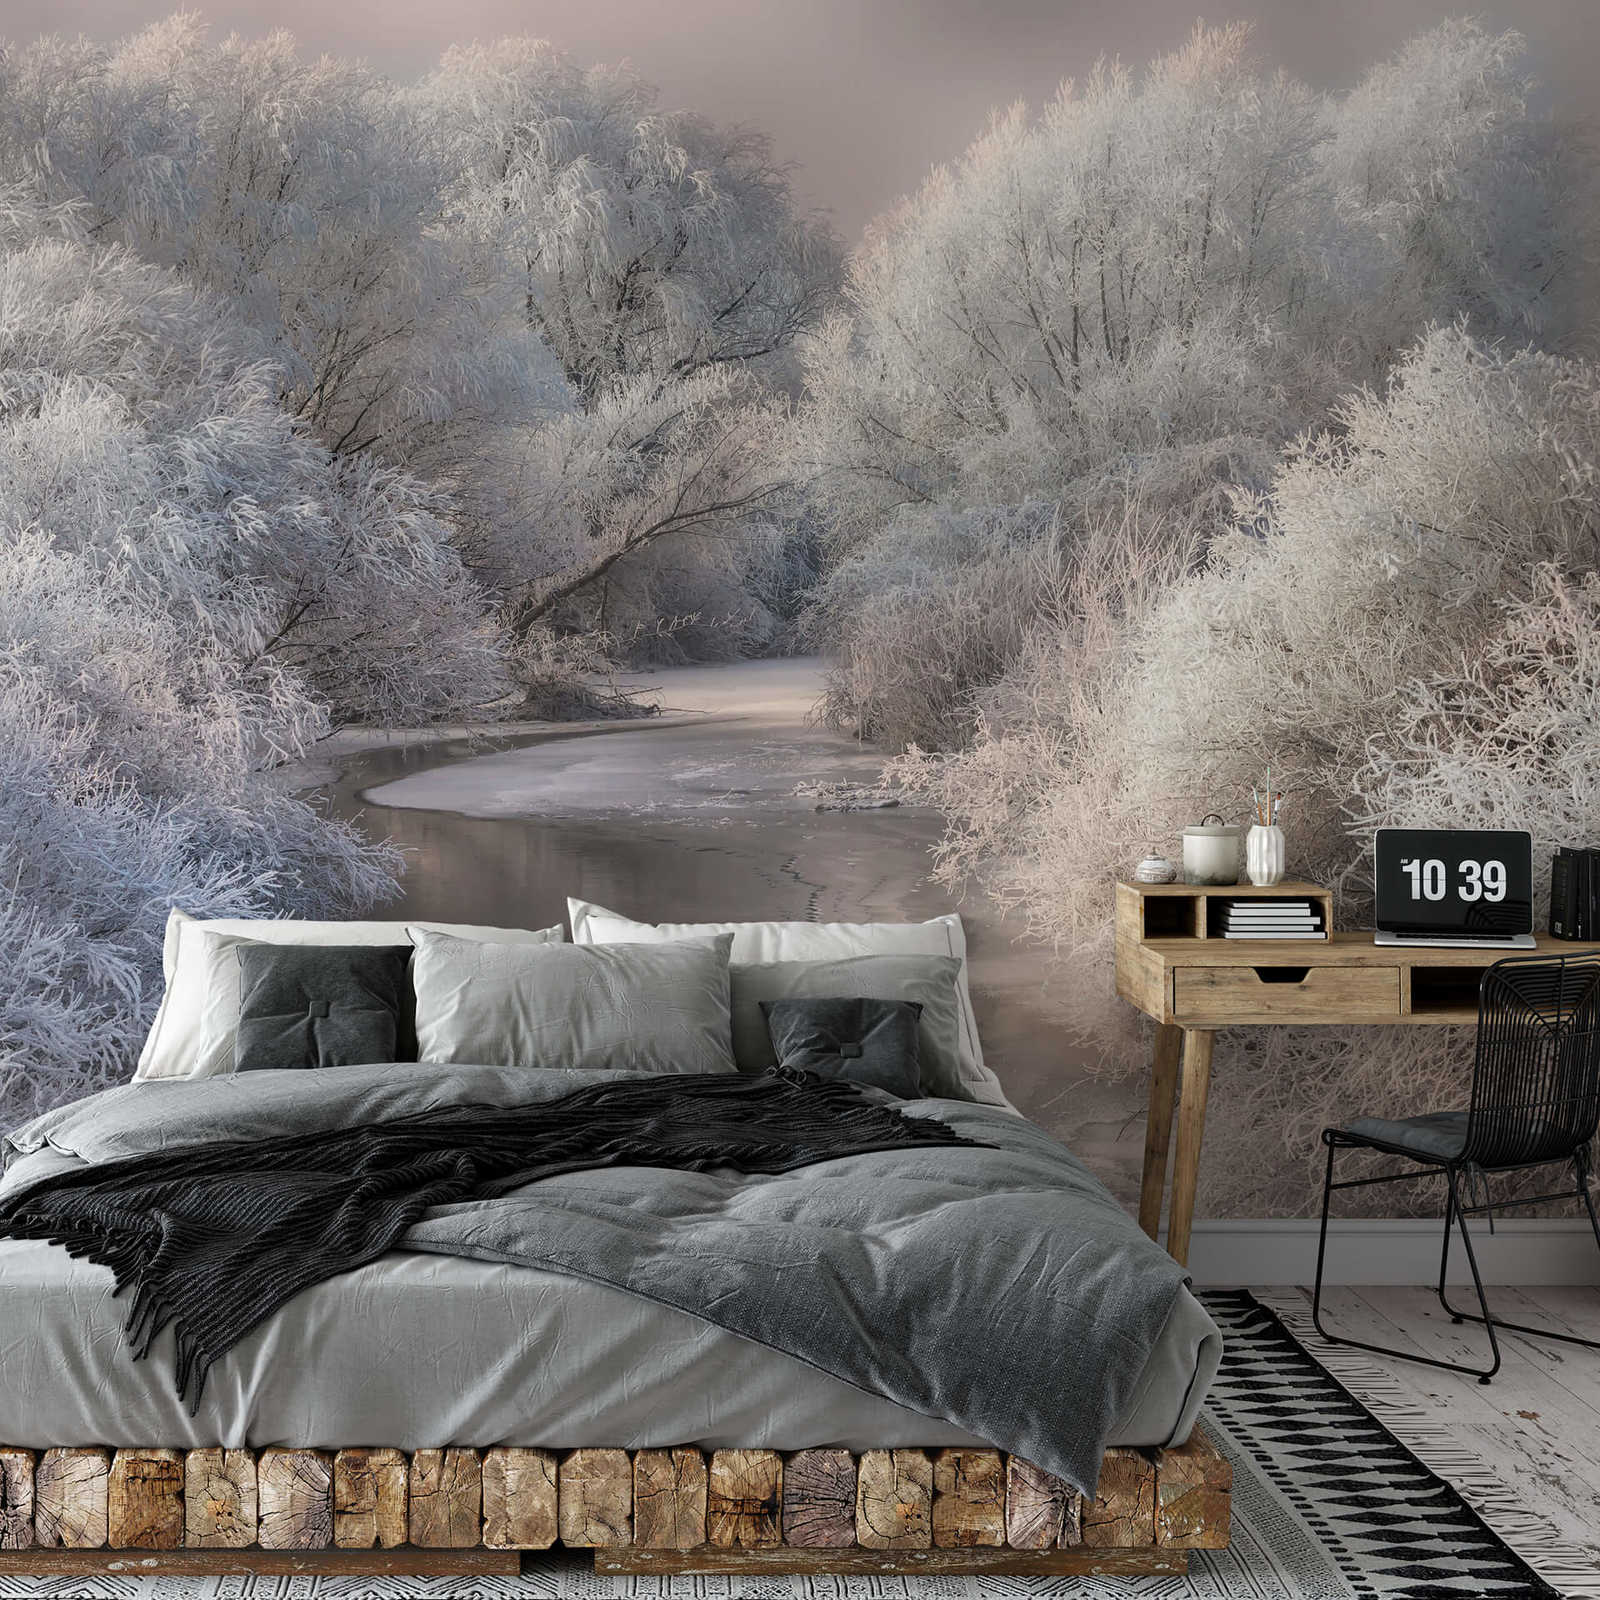             Fototapete gefrorener Wald mit Fluss – Weiß, Grau
        